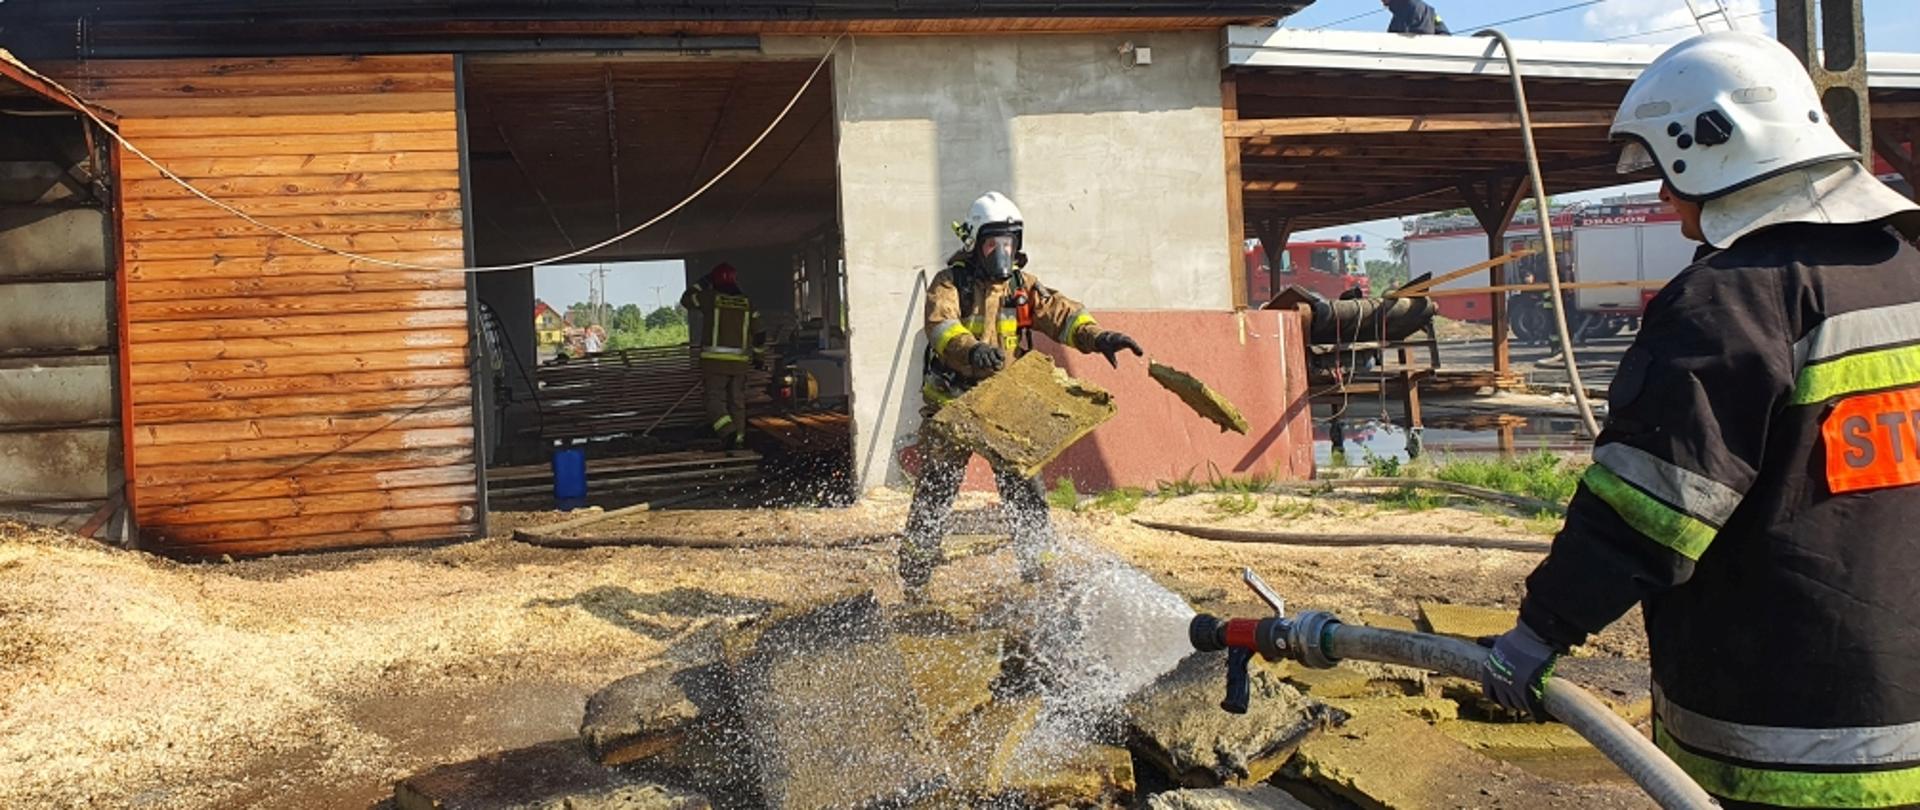 akcja gaszenia tartaku , na zdjęciu trzech strażaków